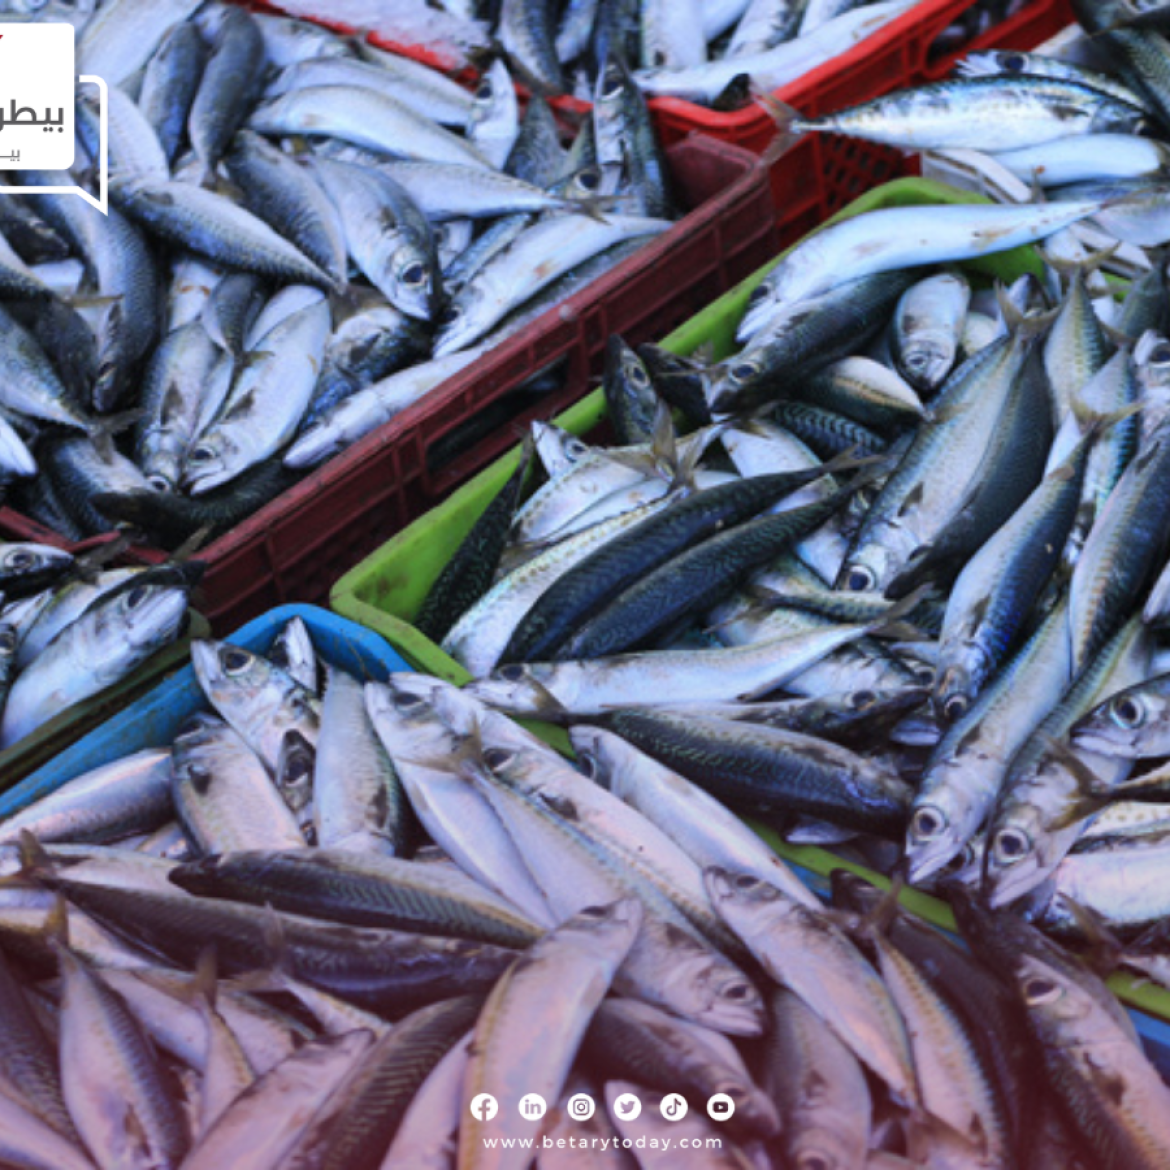 هدوء في أسعار الأسماك والمأكولات البحرية اليوم الجمعة في سوق العبور